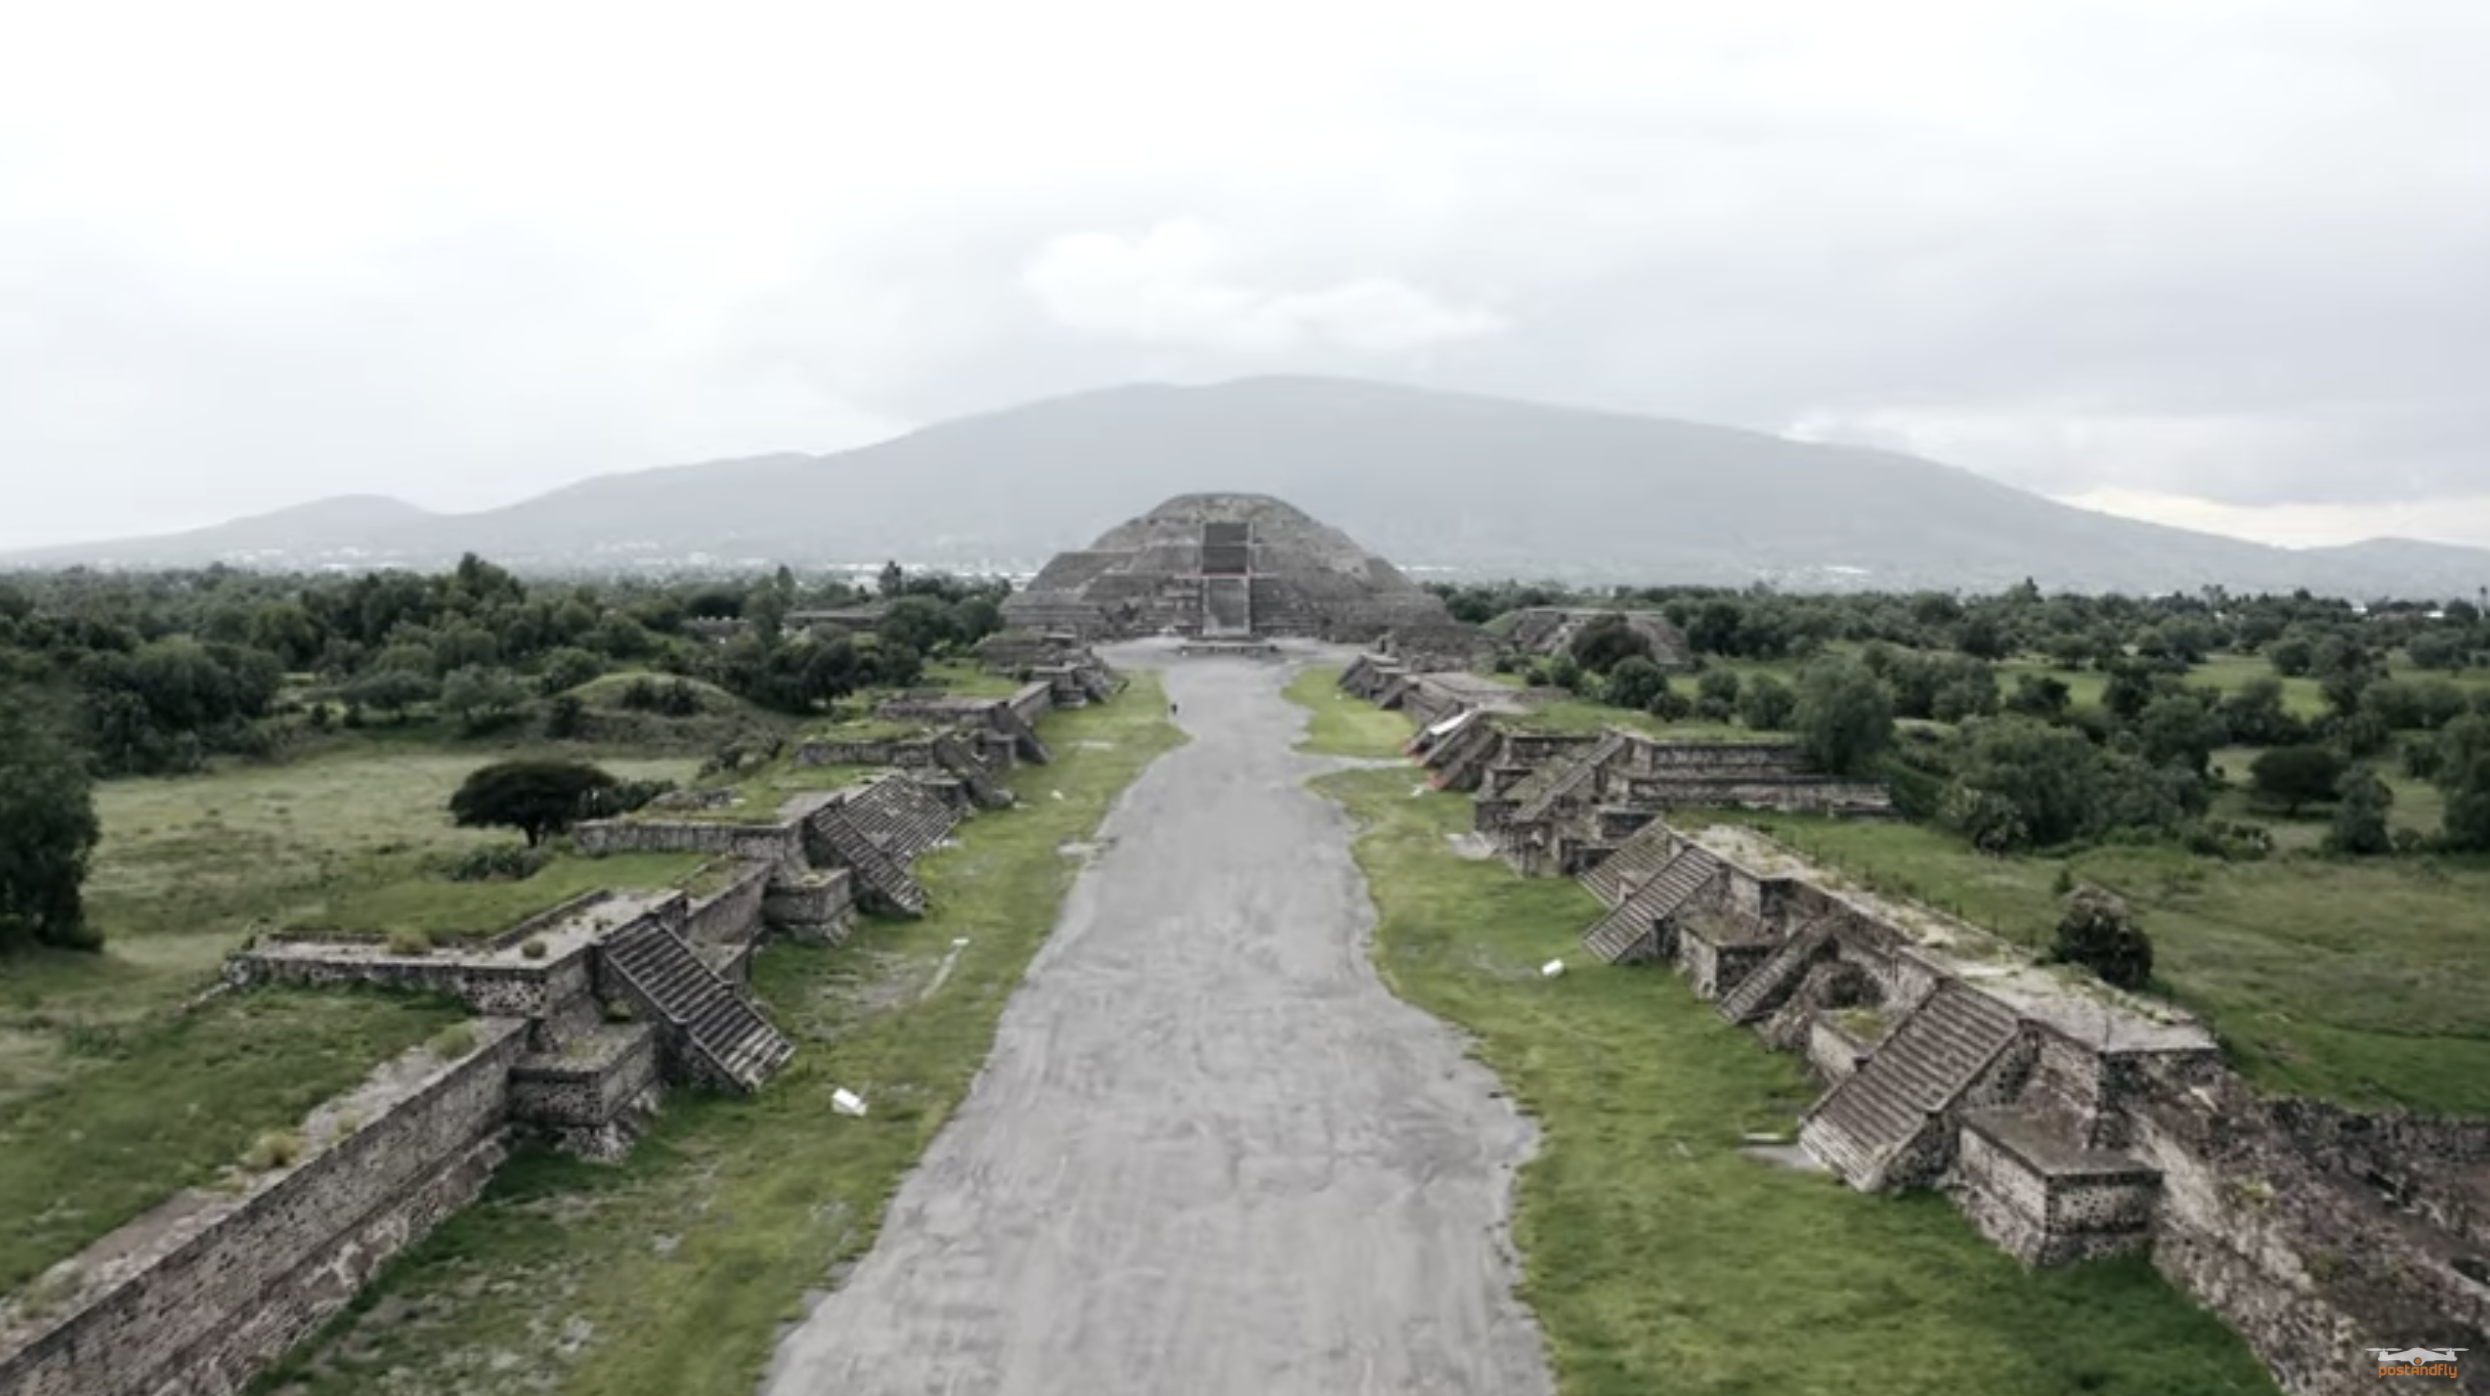 ¡Teotihuacán como nunca antes! Vean estas increíbles imágenes aéreas de las famosas pirámides